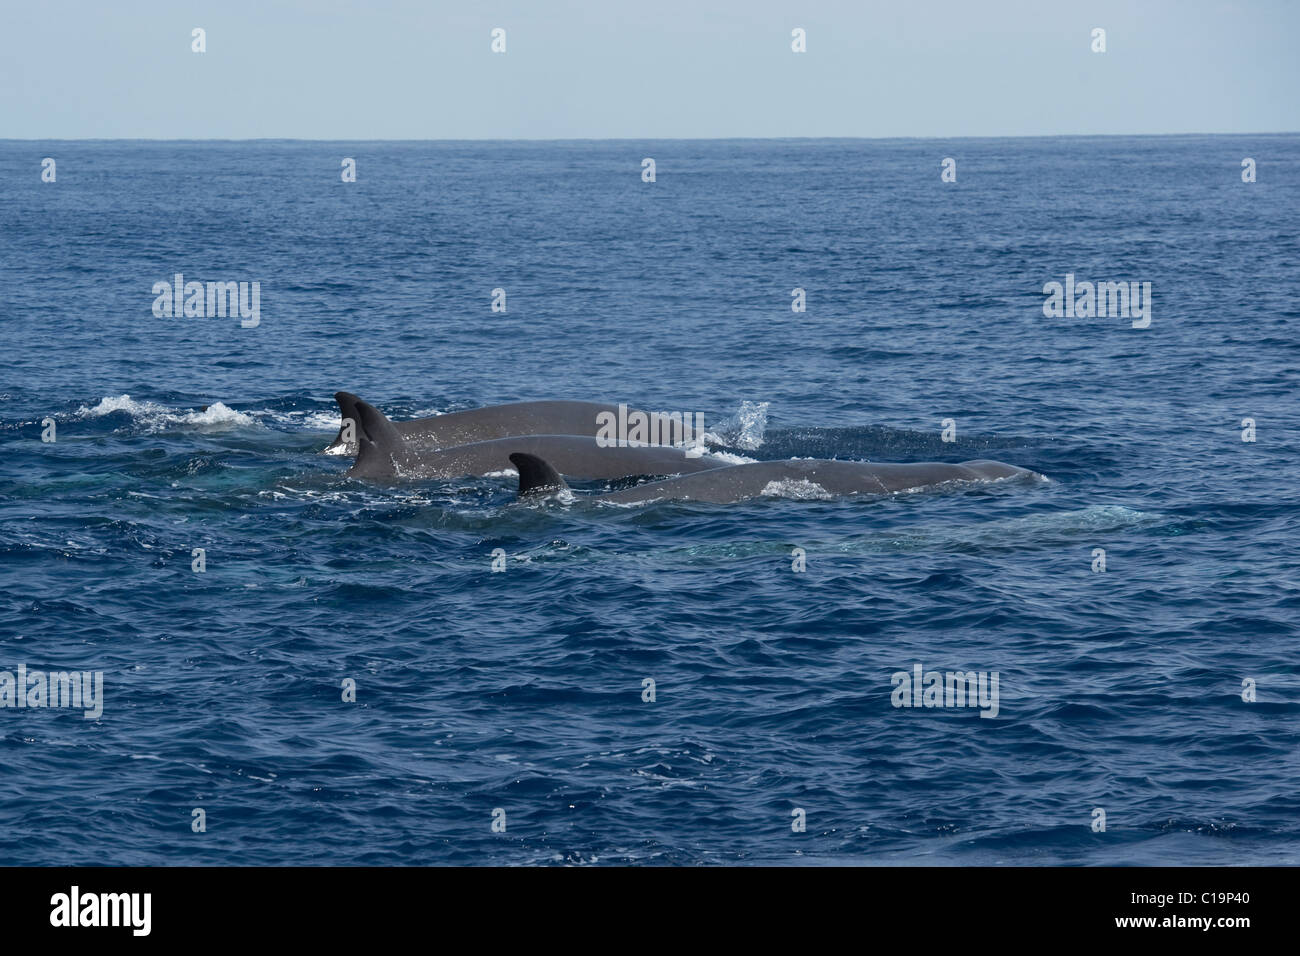 Northern tursiopi balena (Hyperoodon ampullatus) animali adulti affiorante, rare immagine inusuale. Azzorre, Oceano Atlantico. Foto Stock